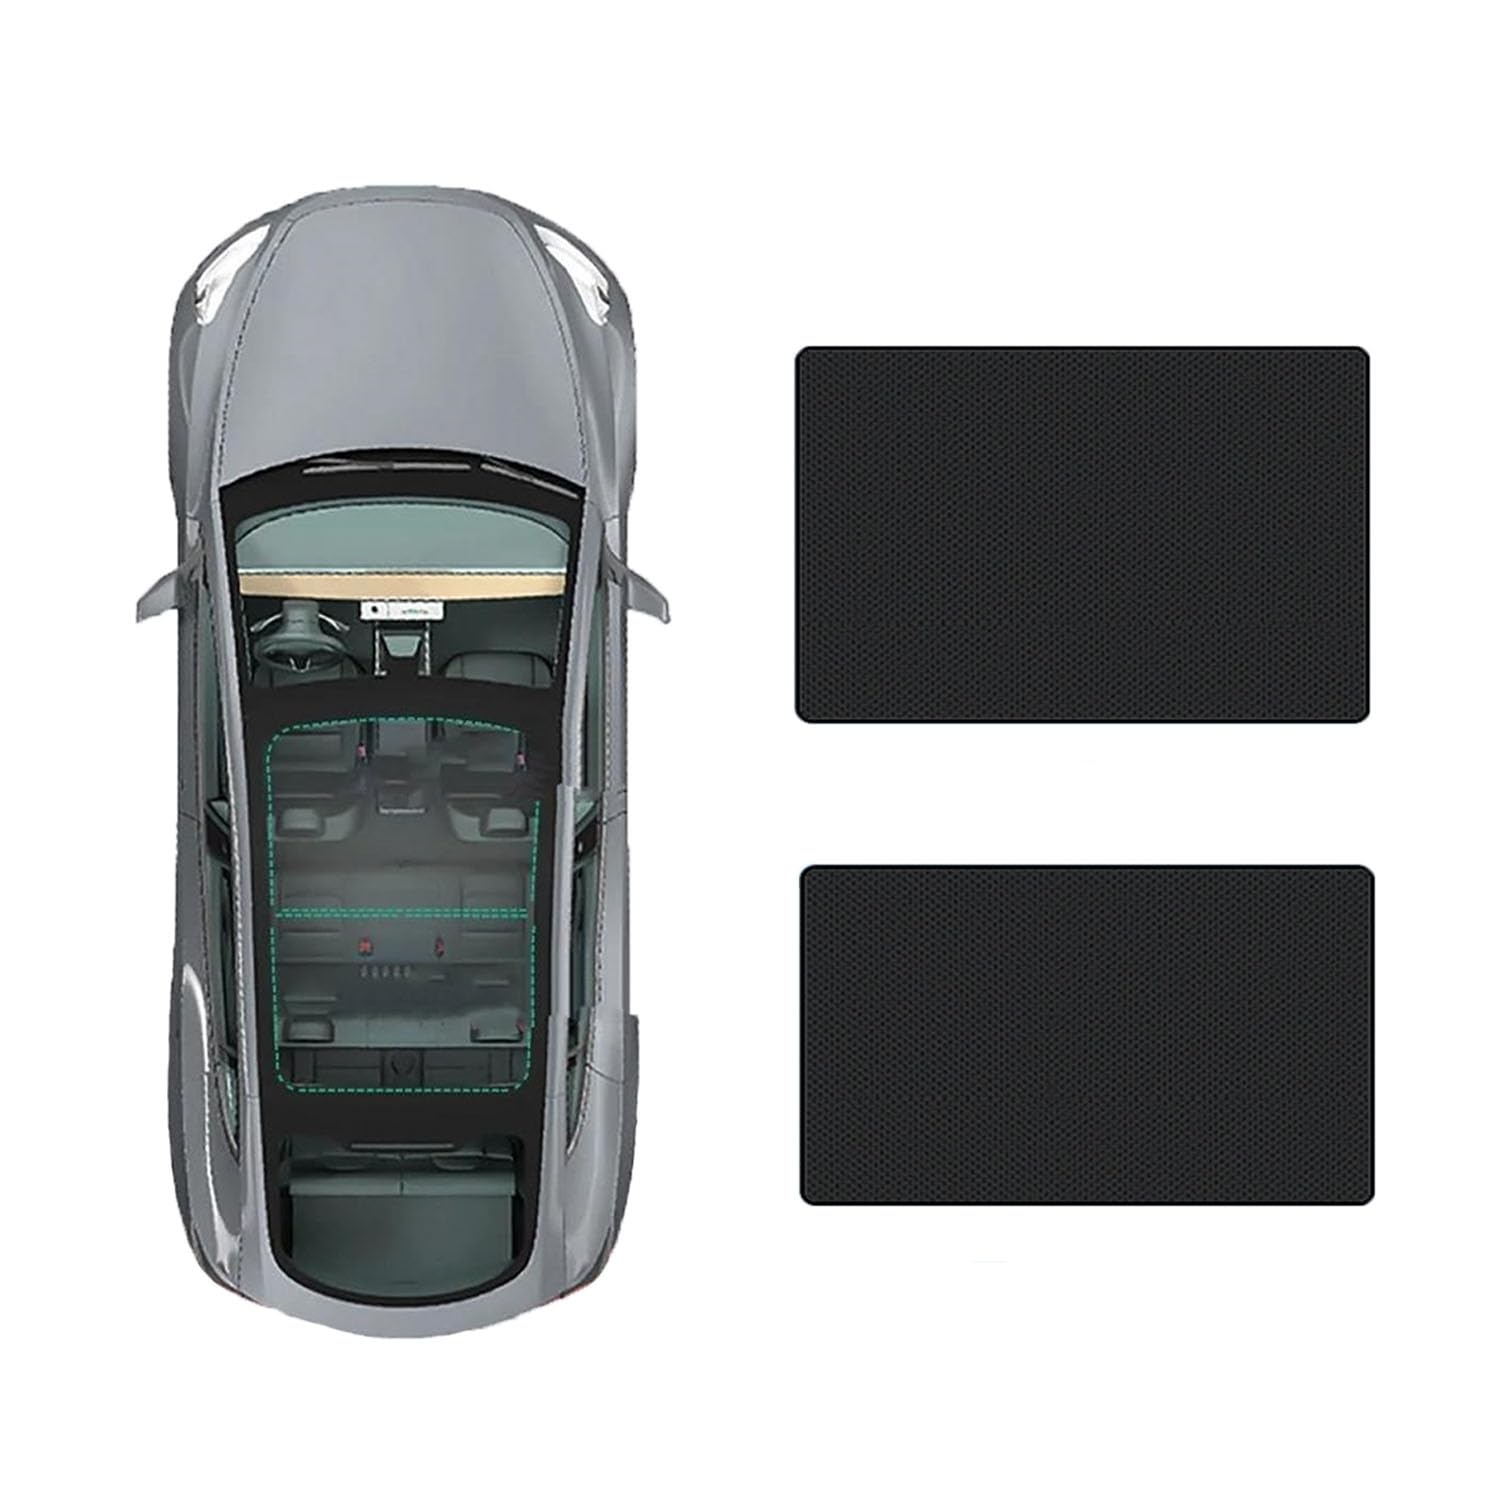 Auto Schiebedach Sonnenschirm Vorhang Für Hyundai Santa Fe 2013-,UV-Schutz Schattierung vorne Heckscheibe Sonnenschutz,C-Black regular Style von JiAQen